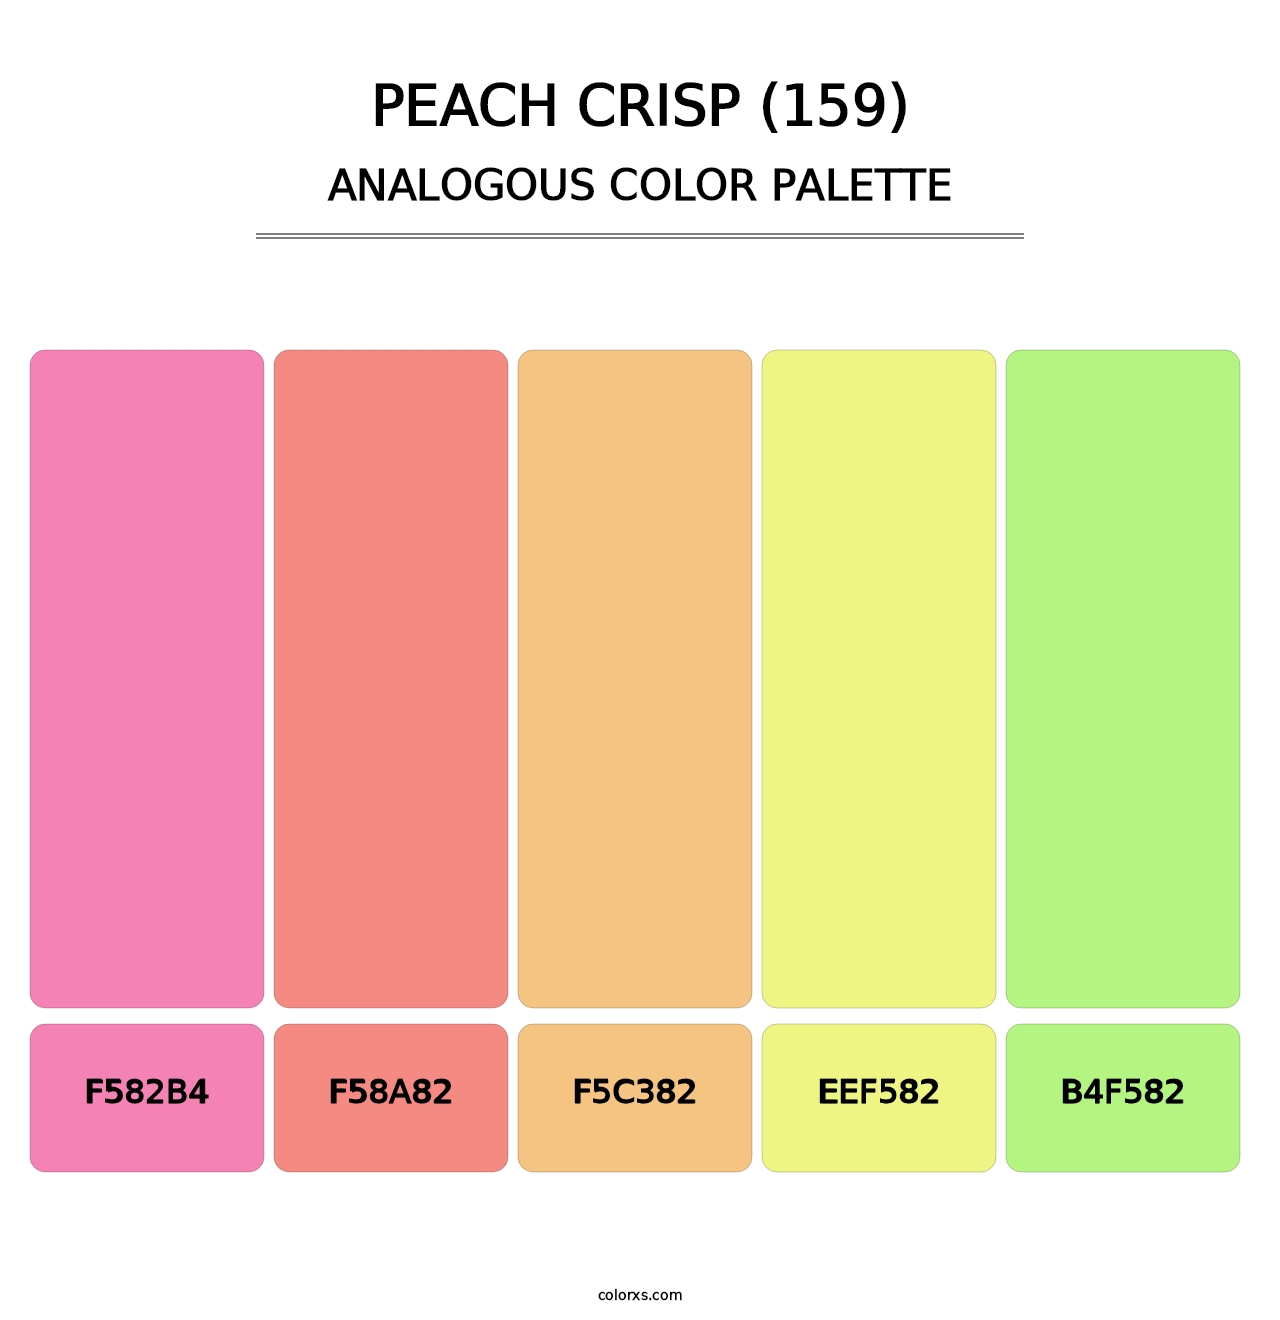 Peach Crisp (159) - Analogous Color Palette